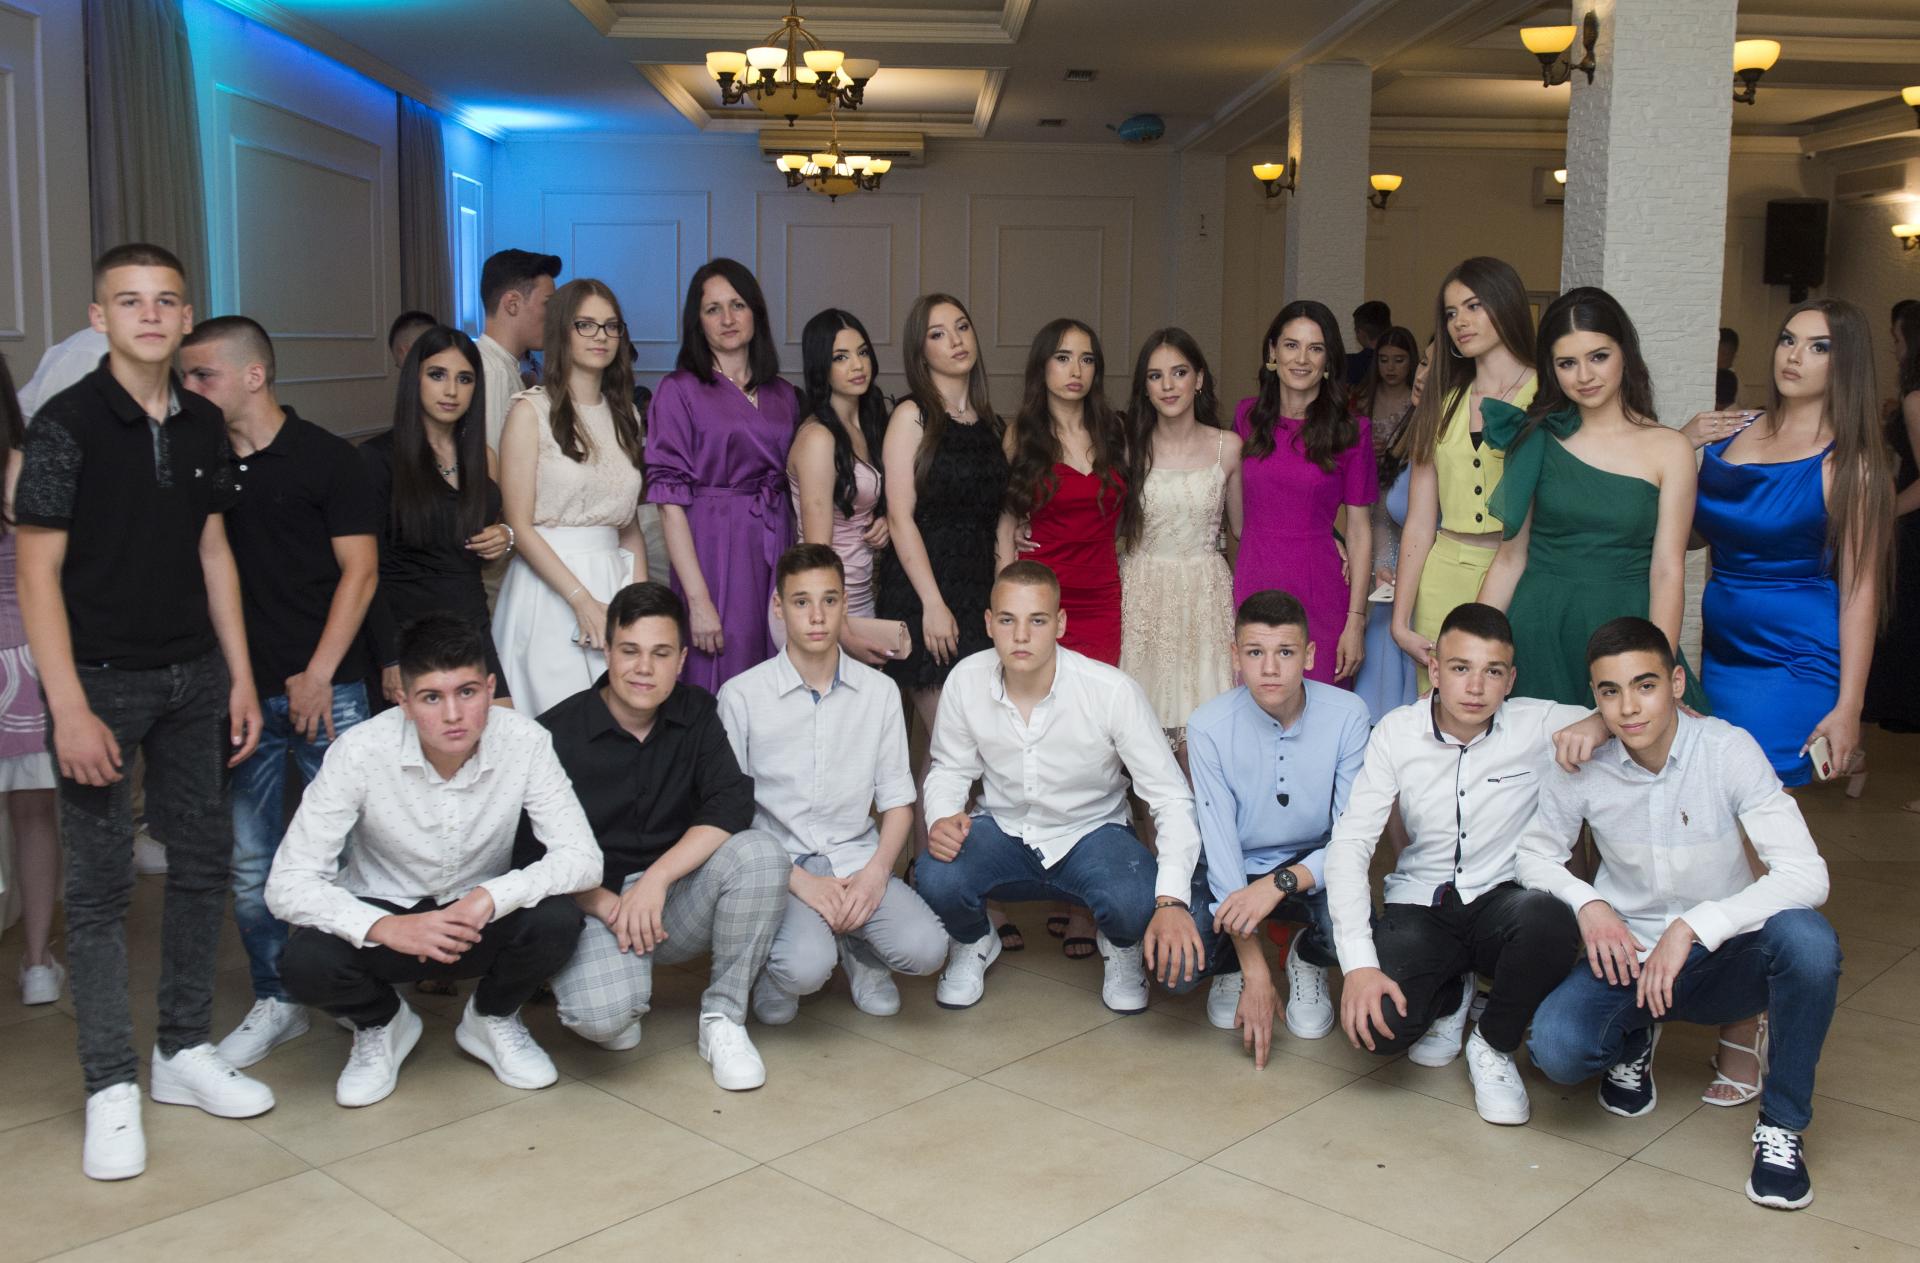 Gli studenti delle scuole primarie “Vladimir Nazor” festeggiano il diploma: tu sei la luce e la perla della scuola